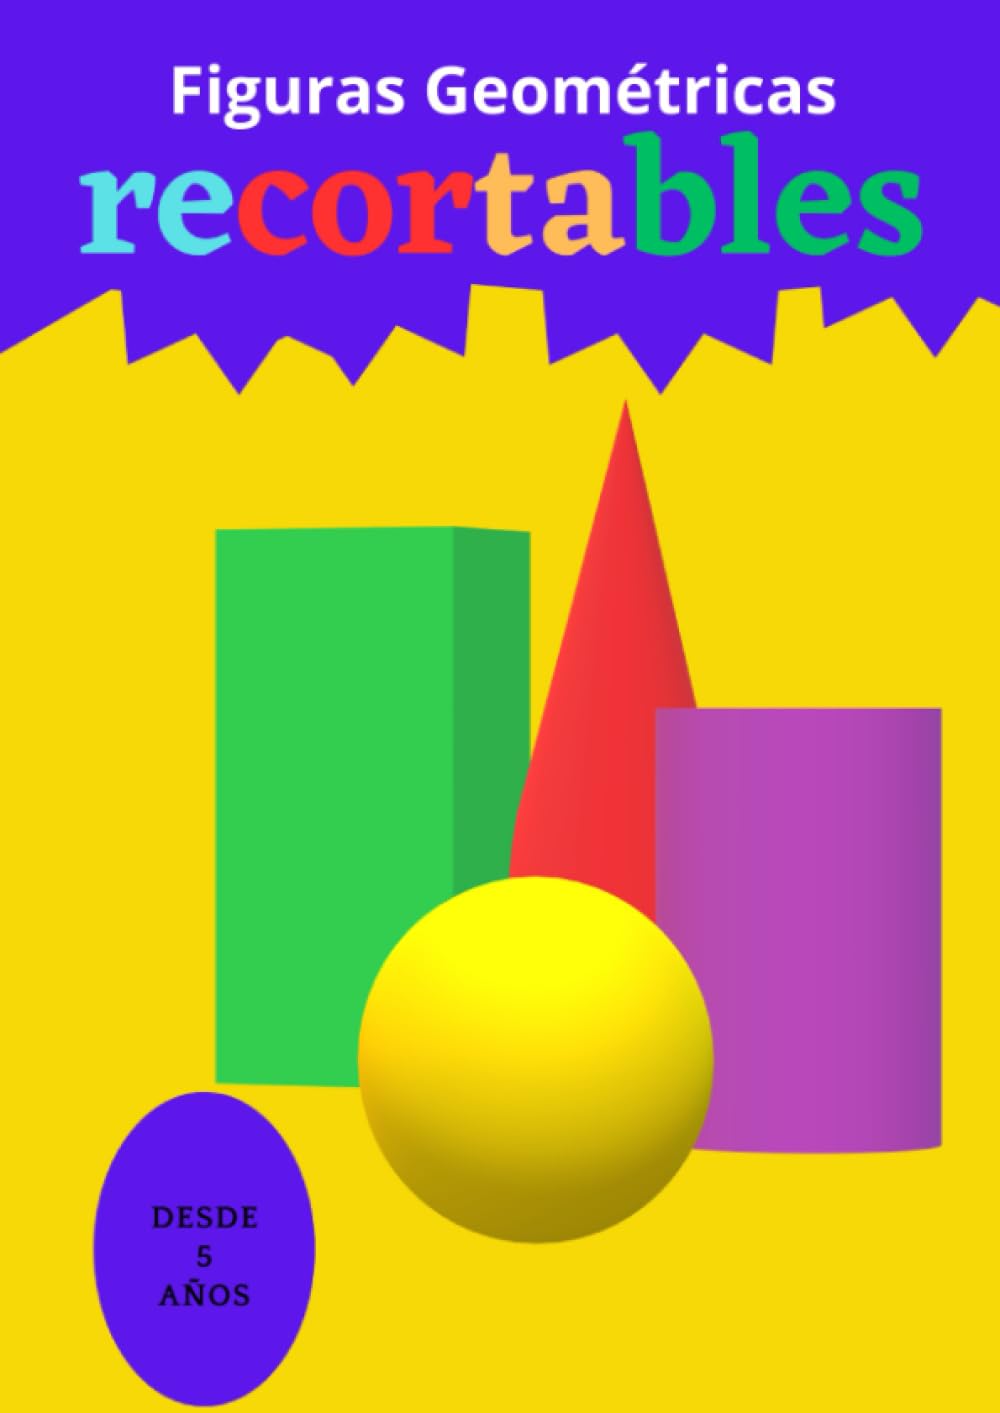 Libro: Figuras geométricas recortables, con actividades para colorear, recortar y pegar por Felipe Rodríguez de Lucas